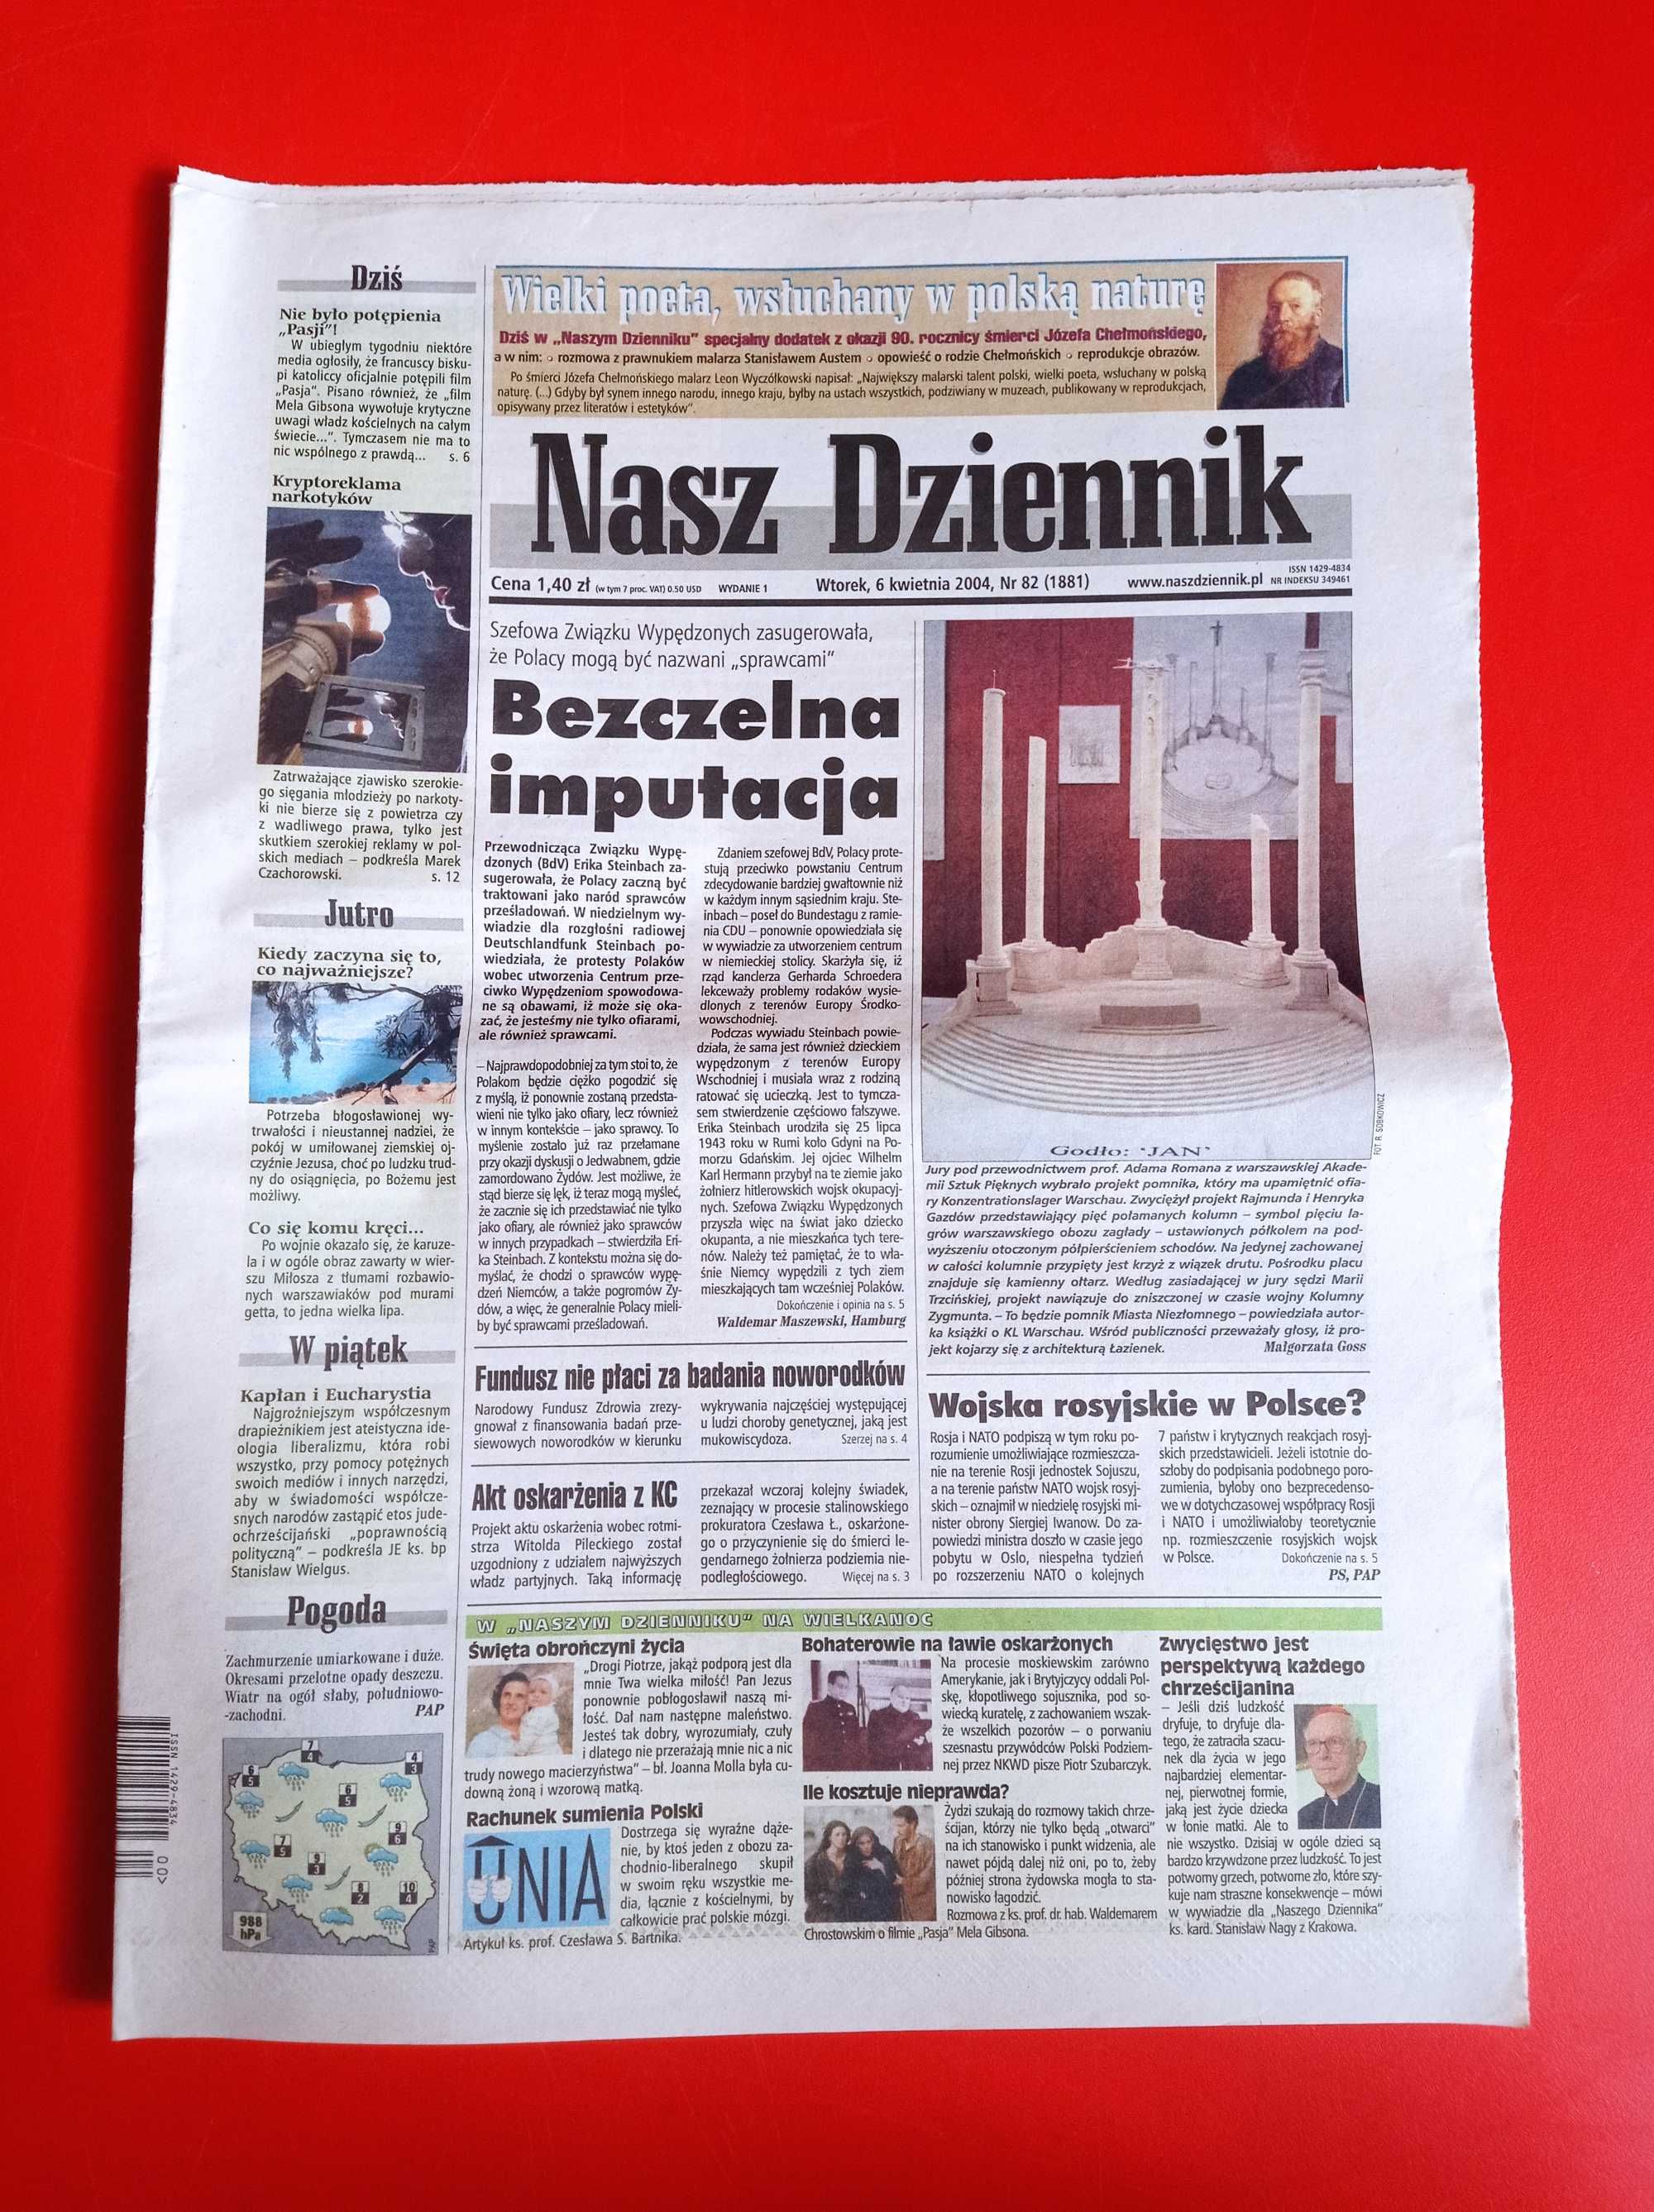 Nasz Dziennik, nr 82/2004, 6 kwietnia 2004